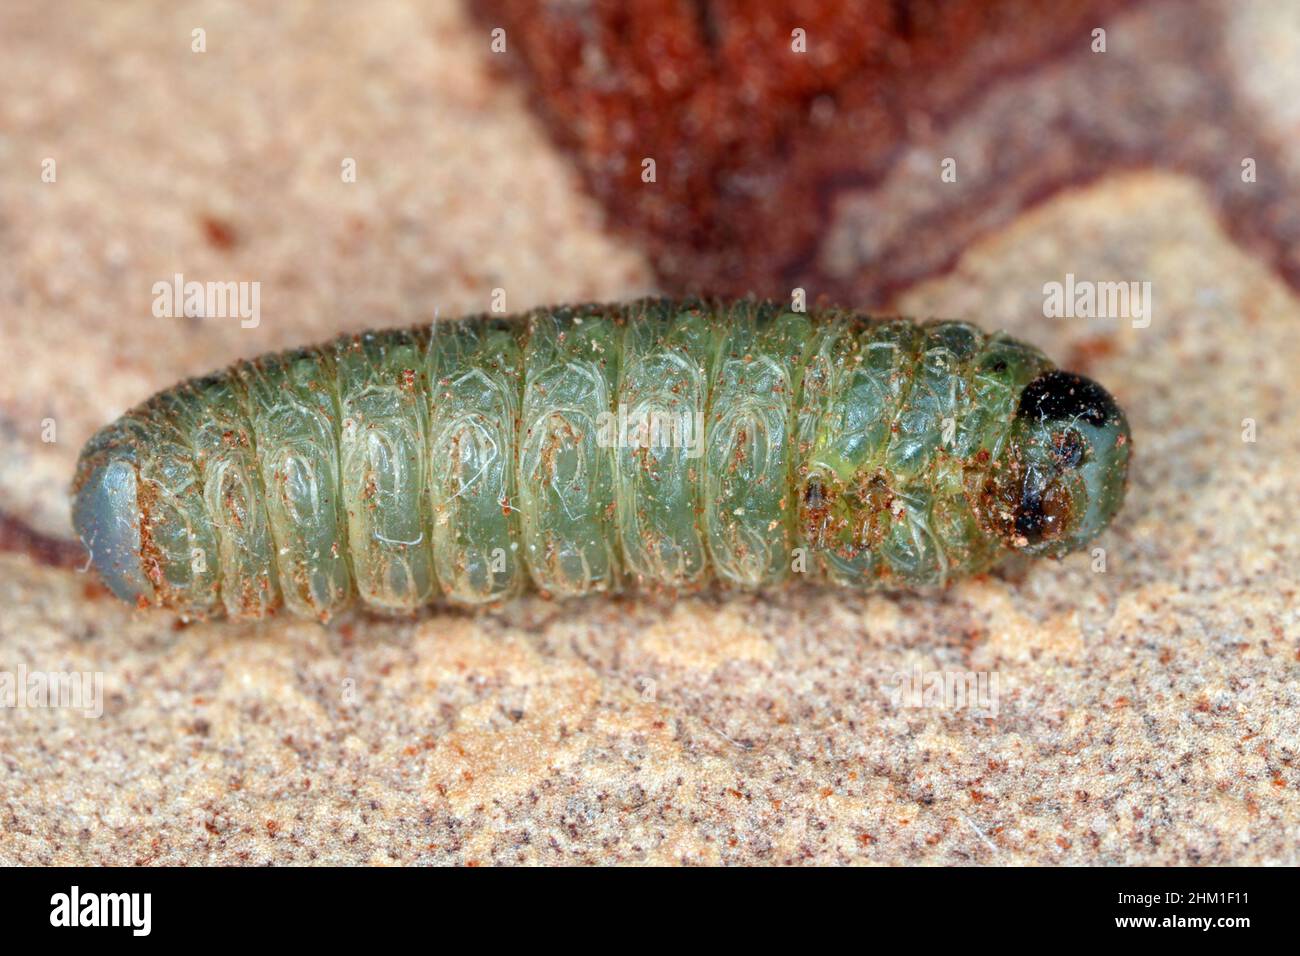 La larva della mosca che vive nella corteccia del pino. Foto Stock